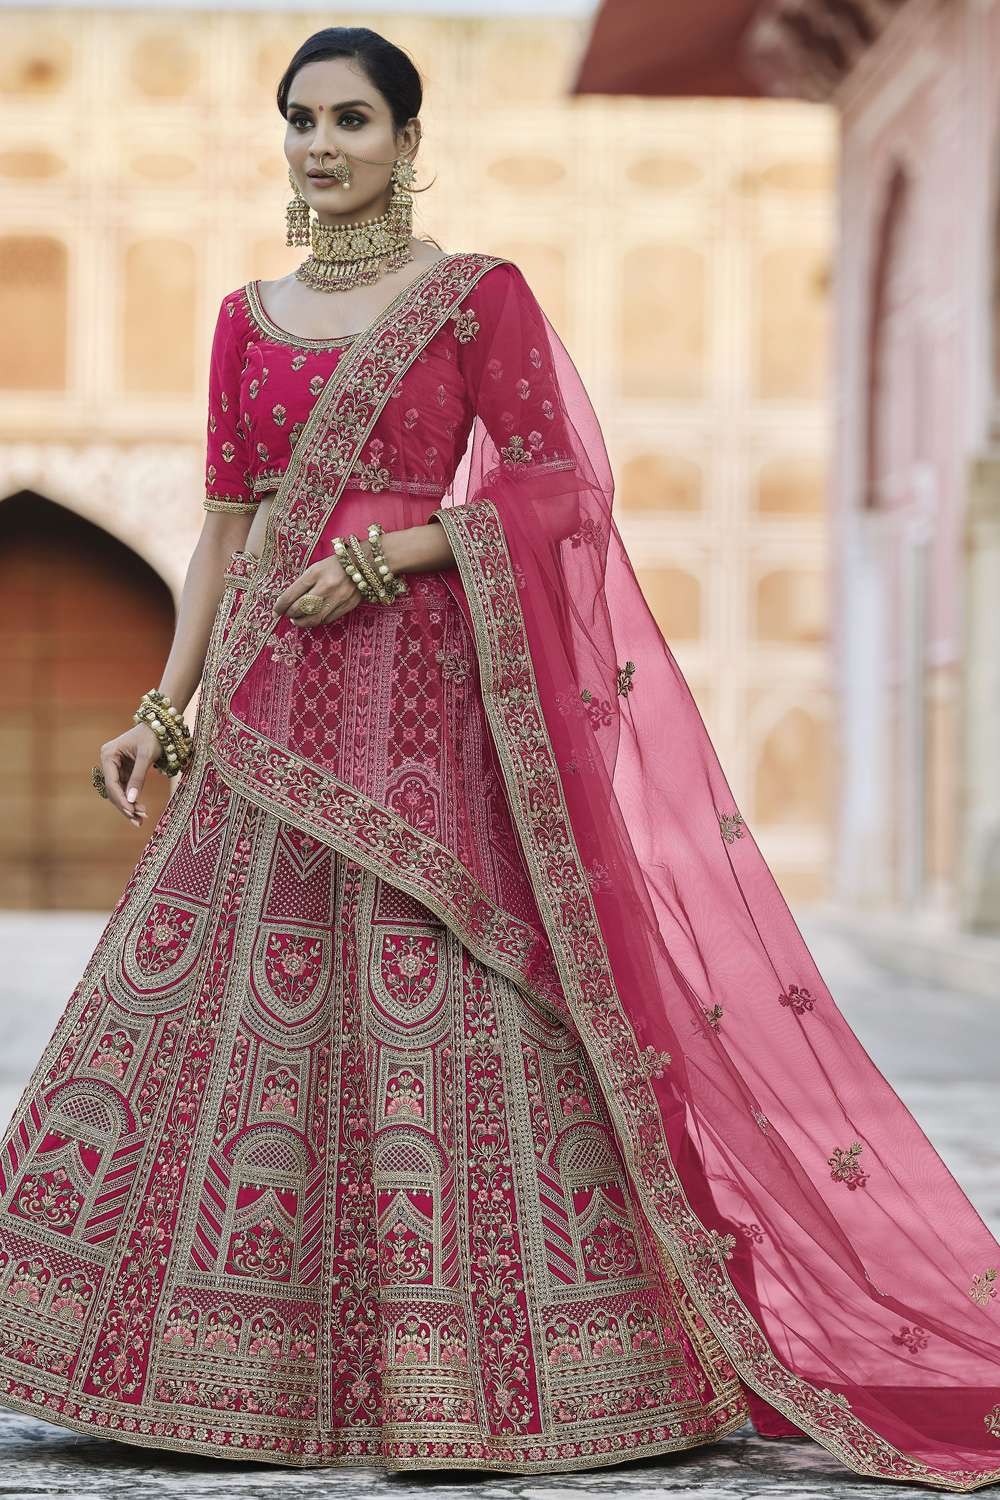 Amazon.com: DEVANJALI Indian LatestDesigner Heavy Wedding Bridal Ready to  Wear/Customised Bollywood Lehenga Choli Dupatta Hand Work and Stone  Embellished S Size BLACK Color : Clothing, Shoes & Jewelry